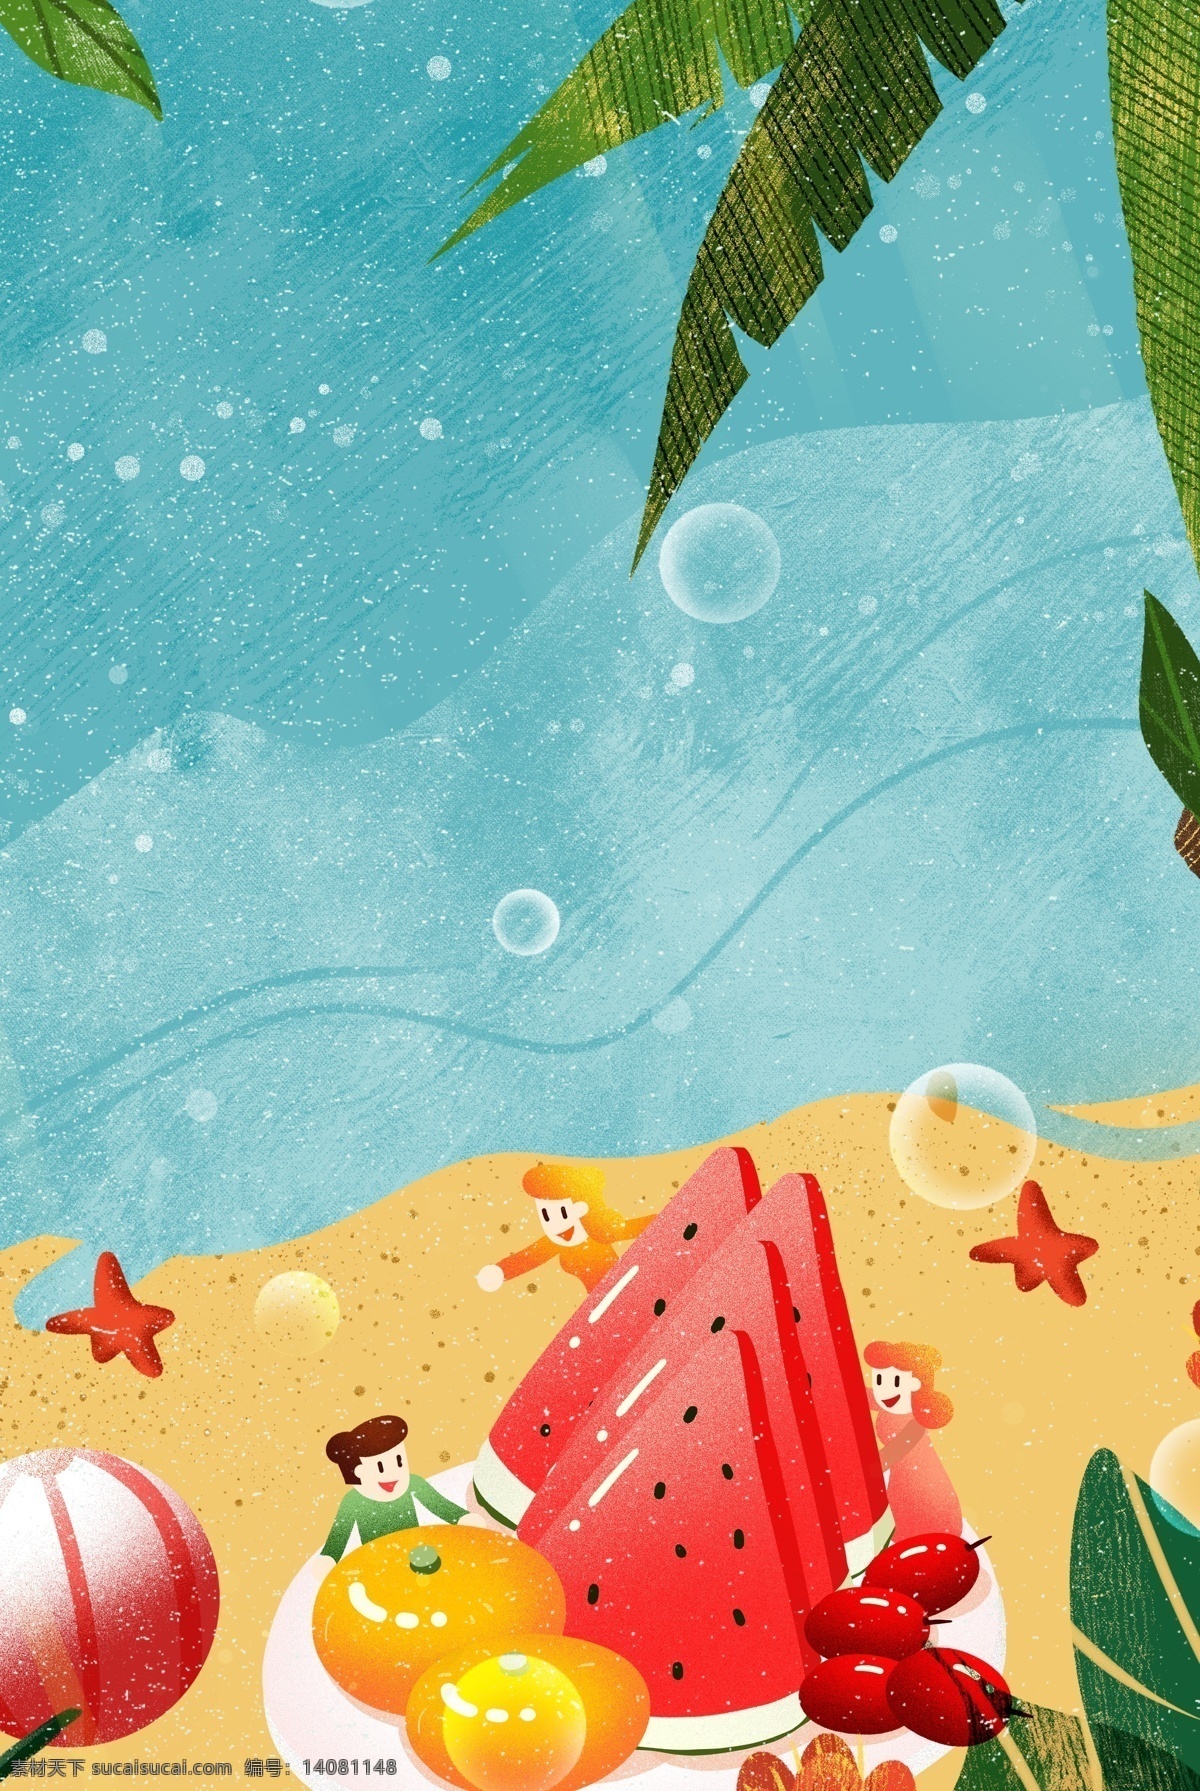 夏季 沙滩 水果 饮料 主题 夏日 清新 卡通 手绘 简约 背景